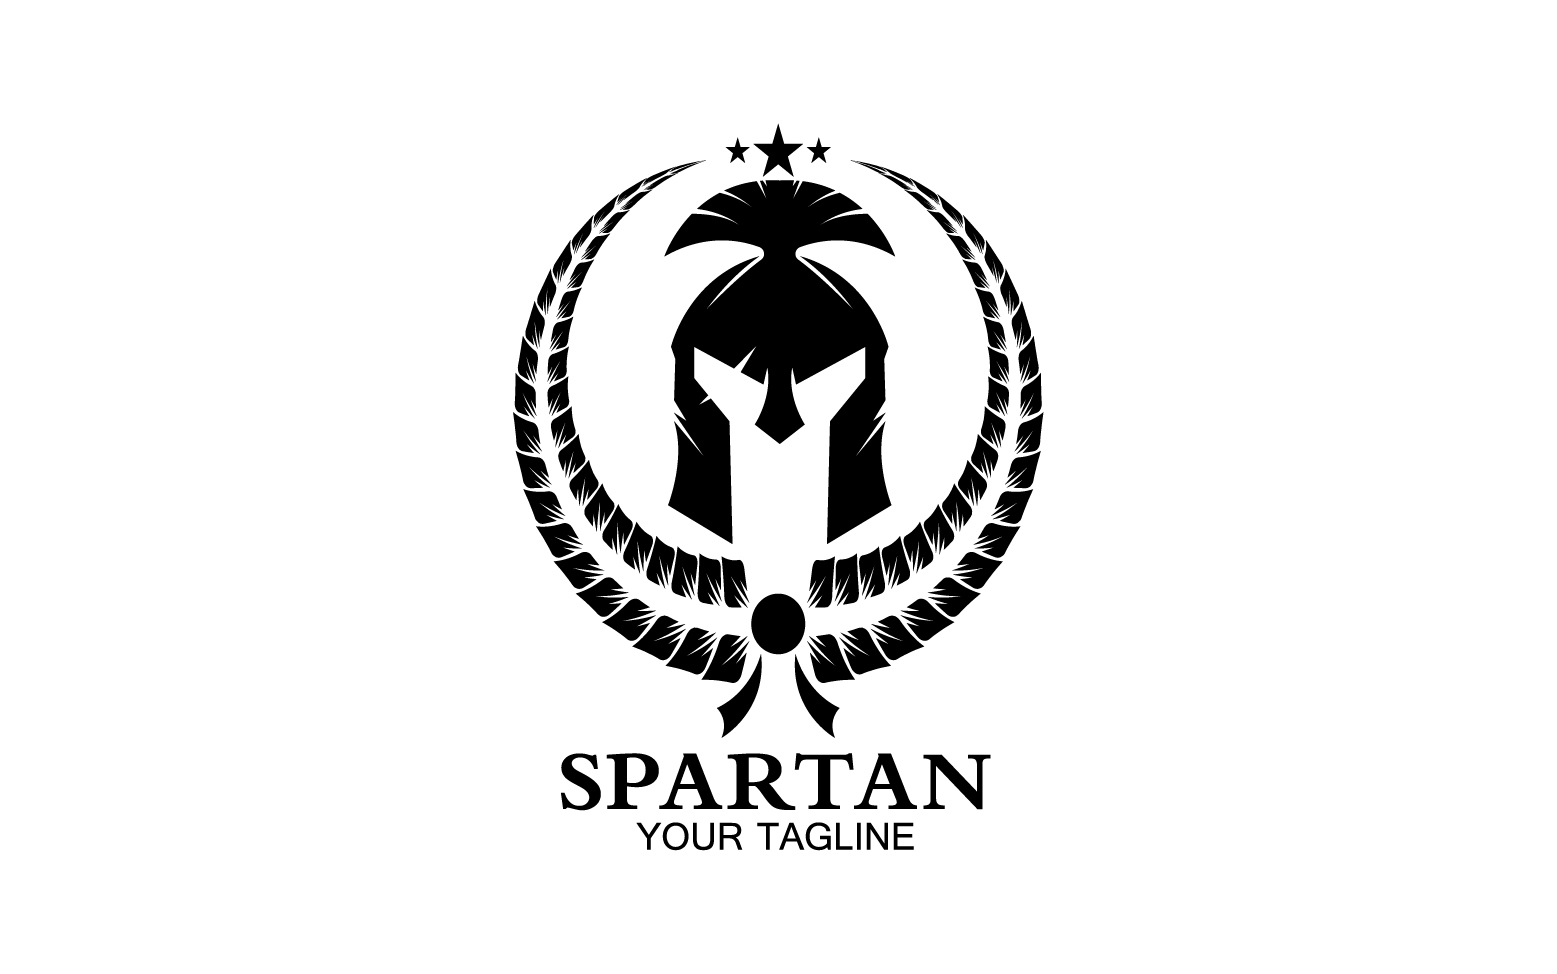 Spartan helmet gladiator icon logo vector v56